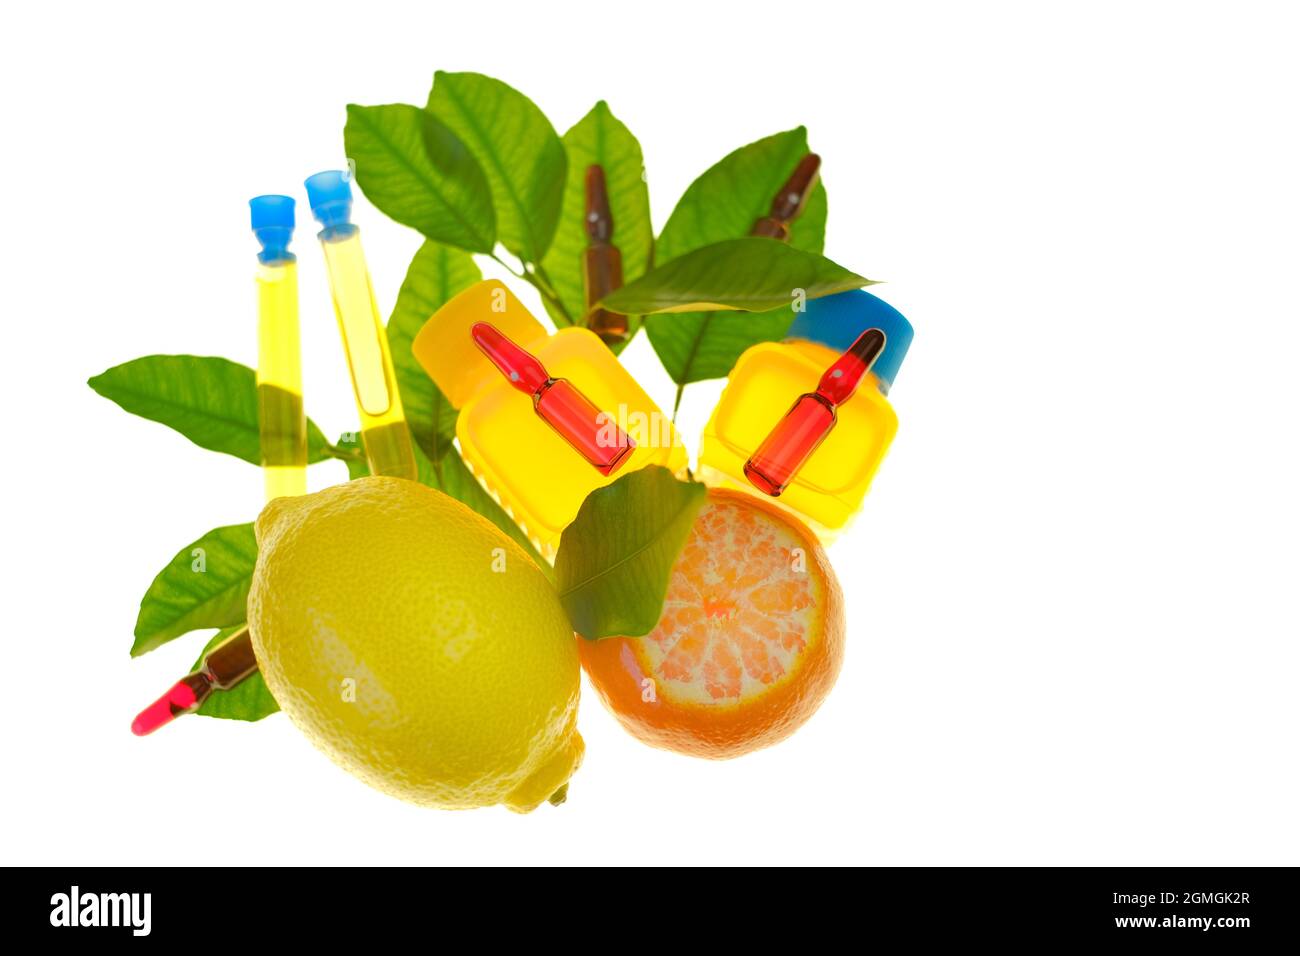 Vitamine C. sérum avec ampoules de vitamine C avec une solution de vitamine C, mandarines et citrons avec feuilles, seringues isolées sur fond blanc Banque D'Images